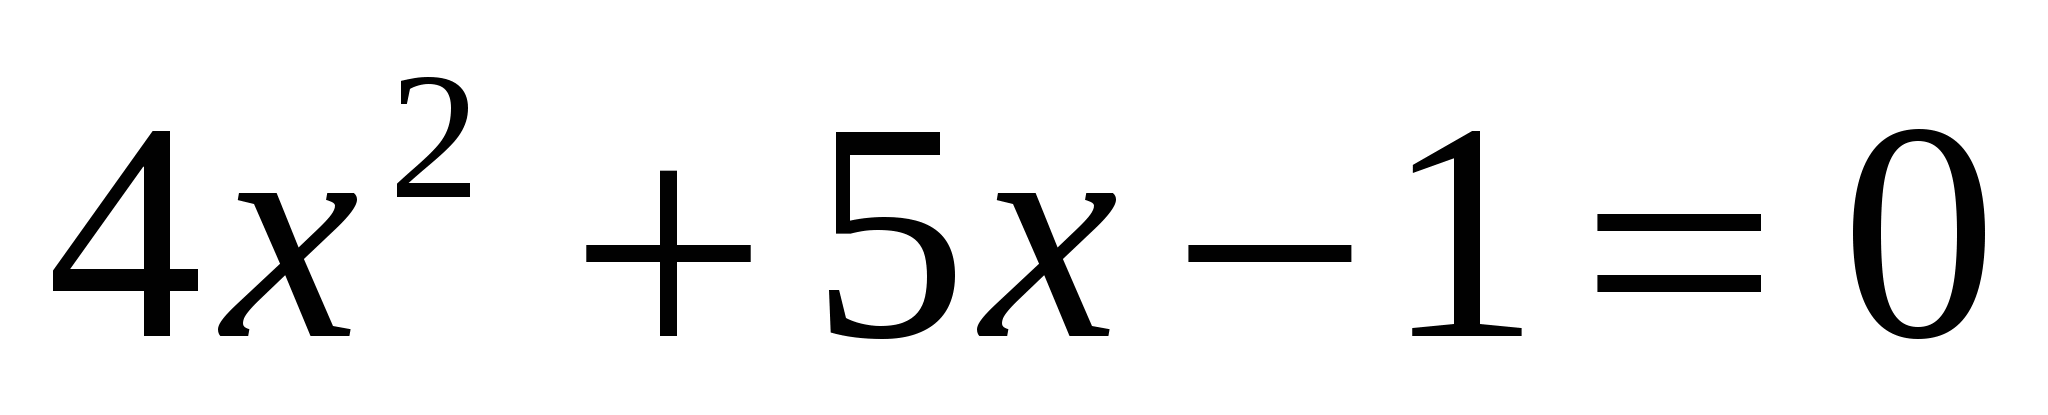 Урок «Алгоритм решения полного квадратного уравнения по формулам корней» , алгебра 8 класс